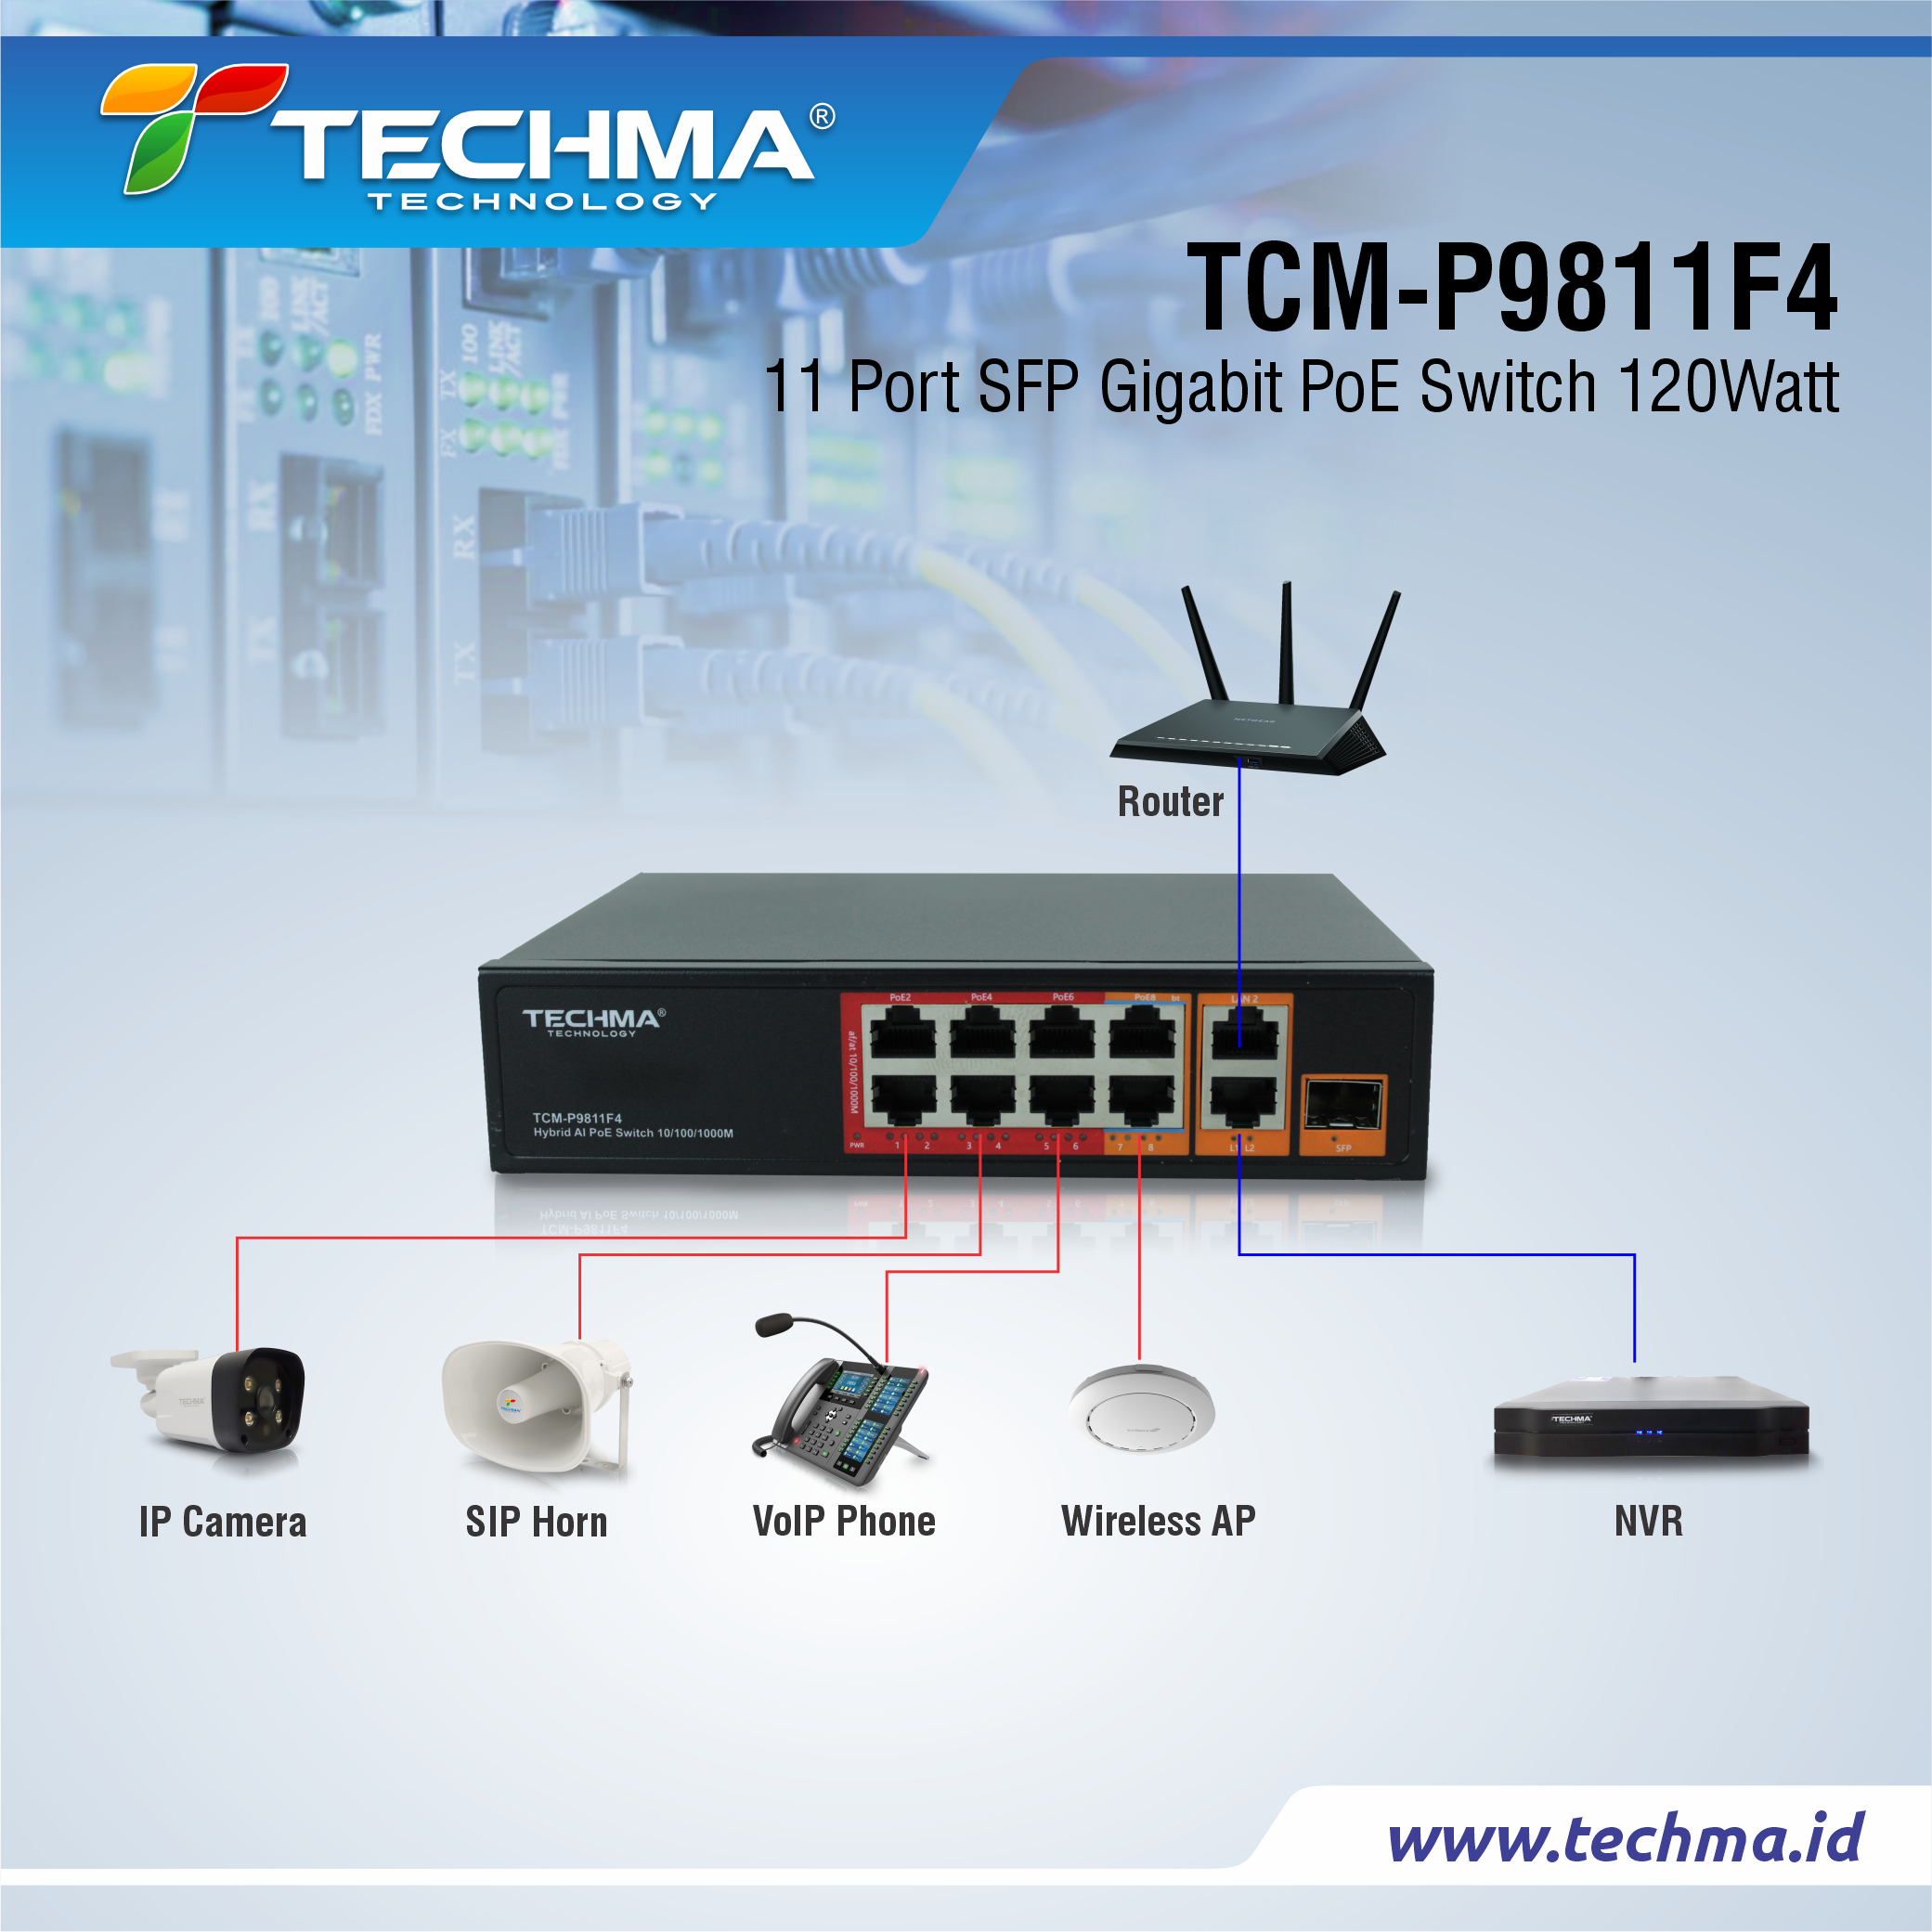 TCM-P9811F4 web 3